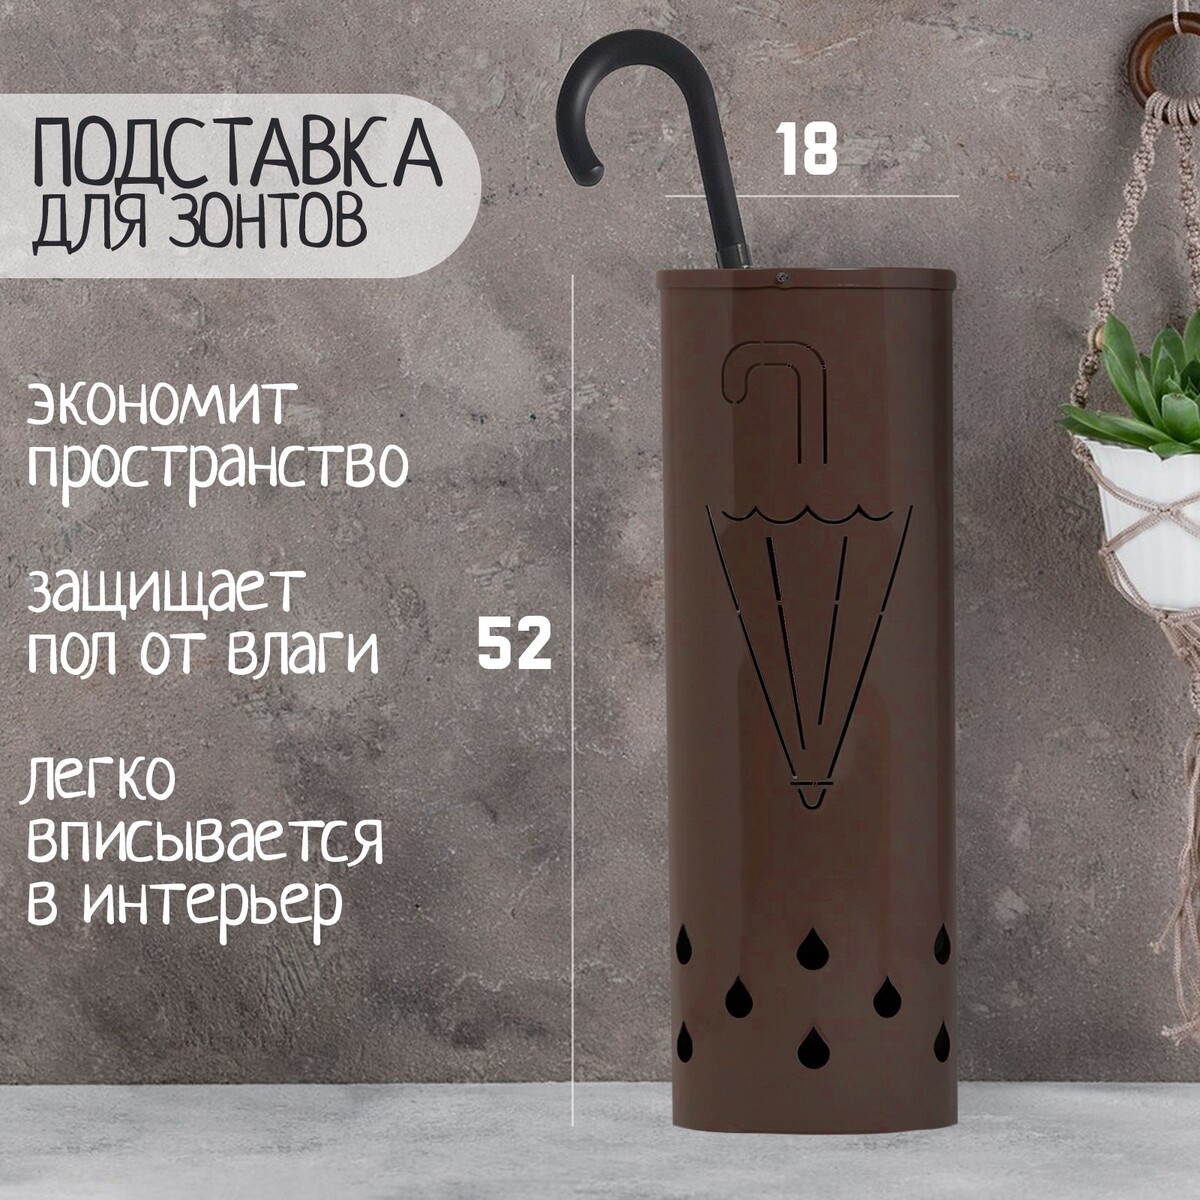 Подставка для зонтов 18 х 18 х 52 см, шоколад подставка для зонтов 18 х 18 х 52 см шоколад